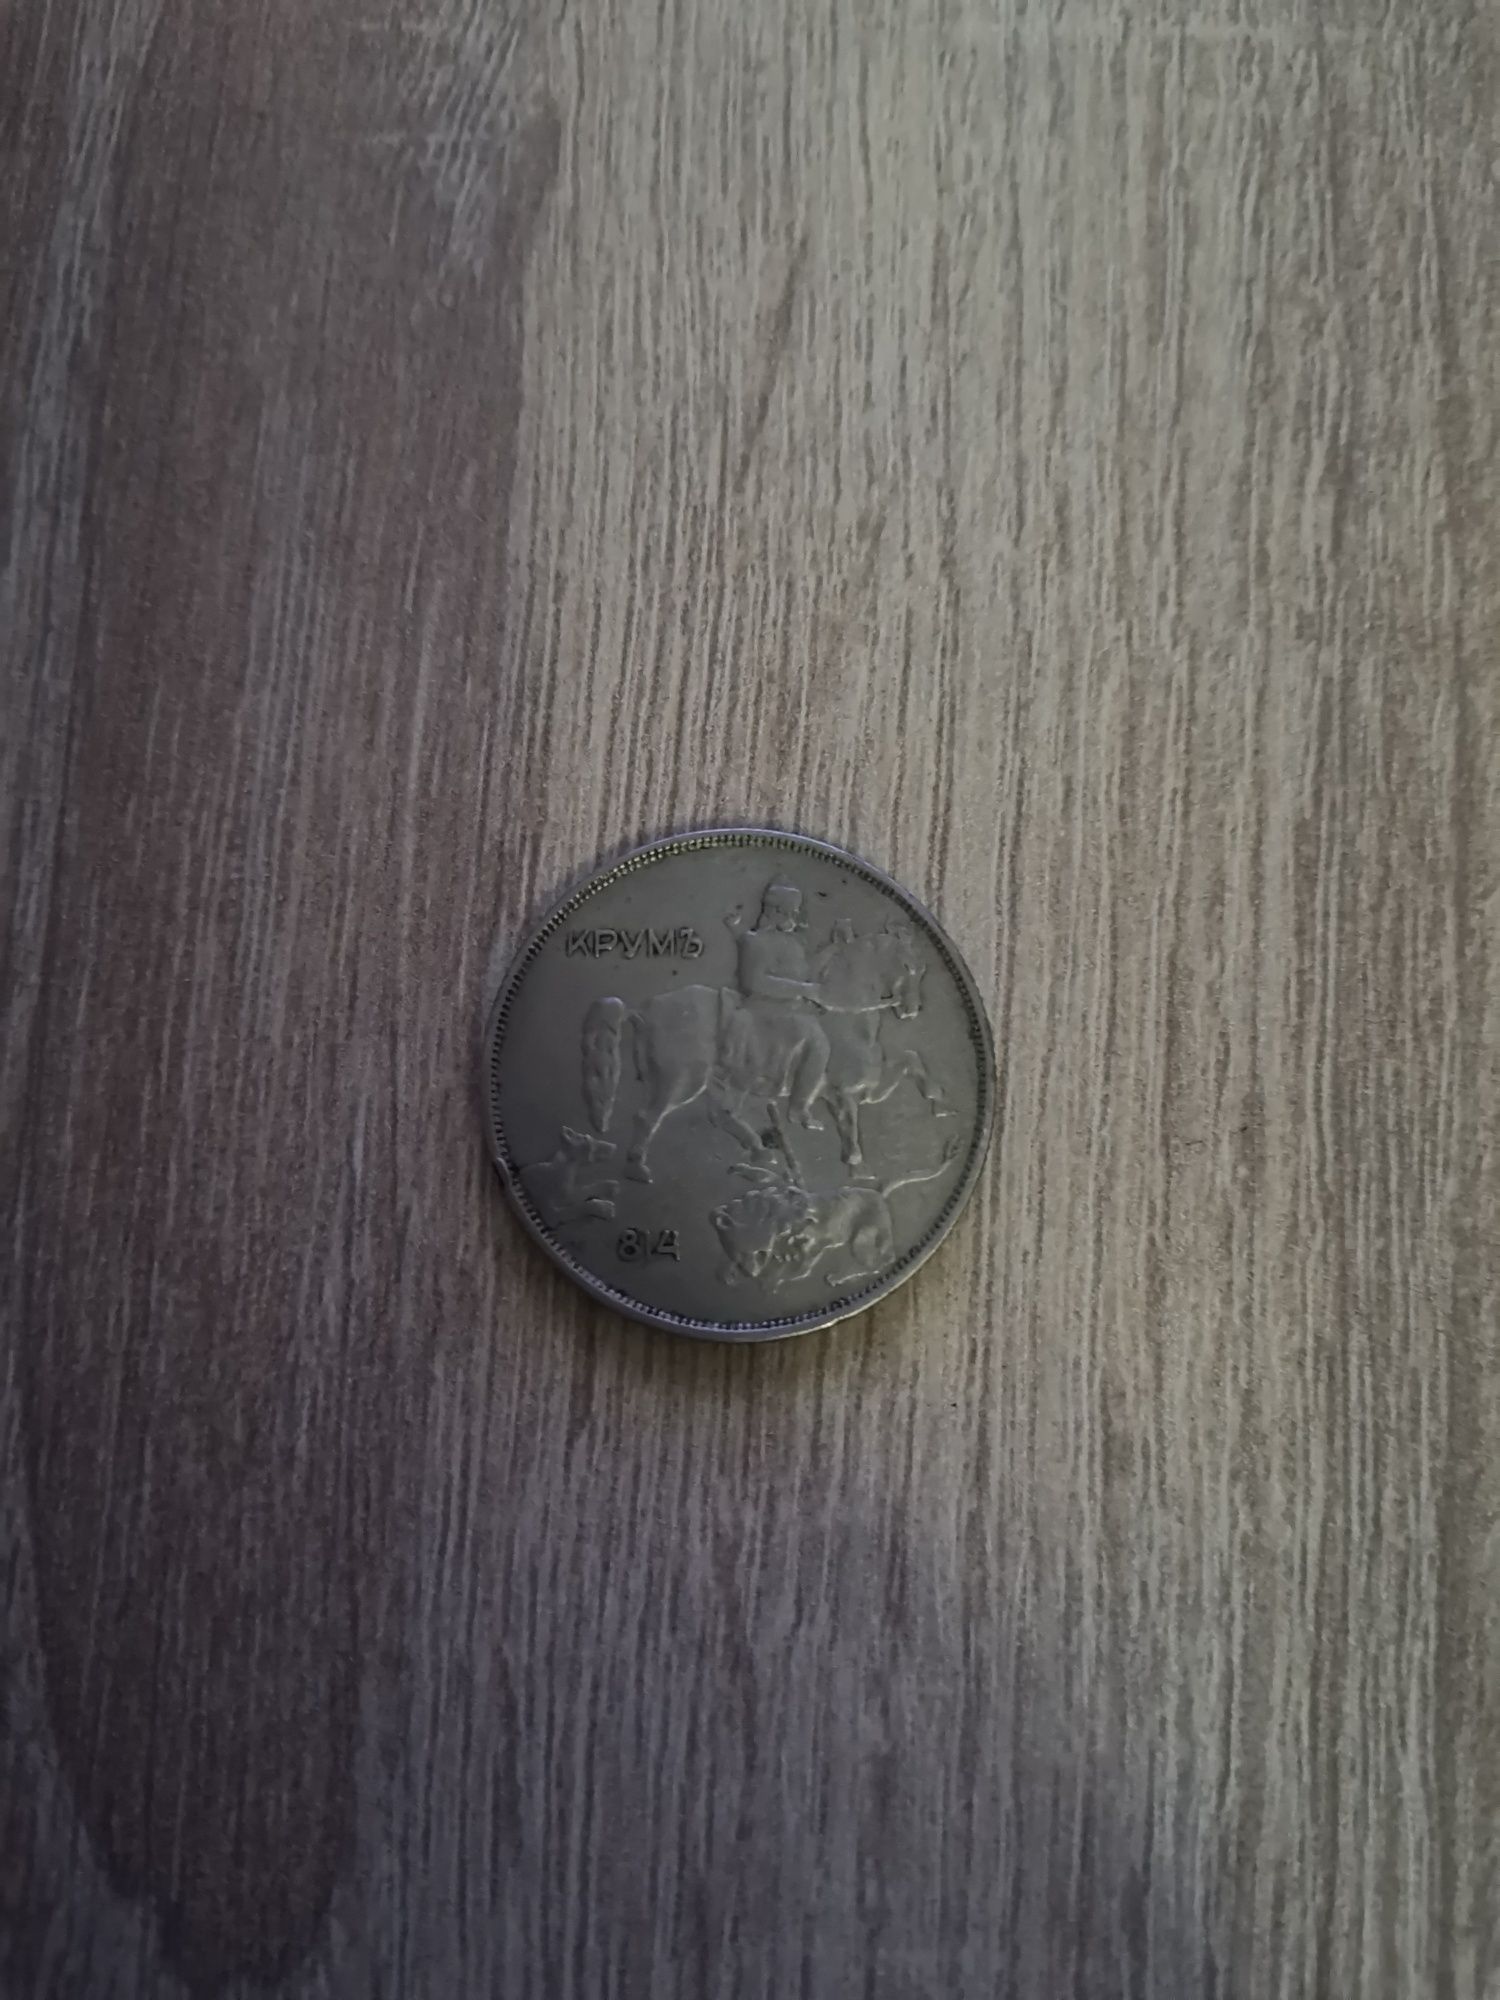 Продавам стaринни монетки - 10лв от 1943г. и 5лв от 1930г.